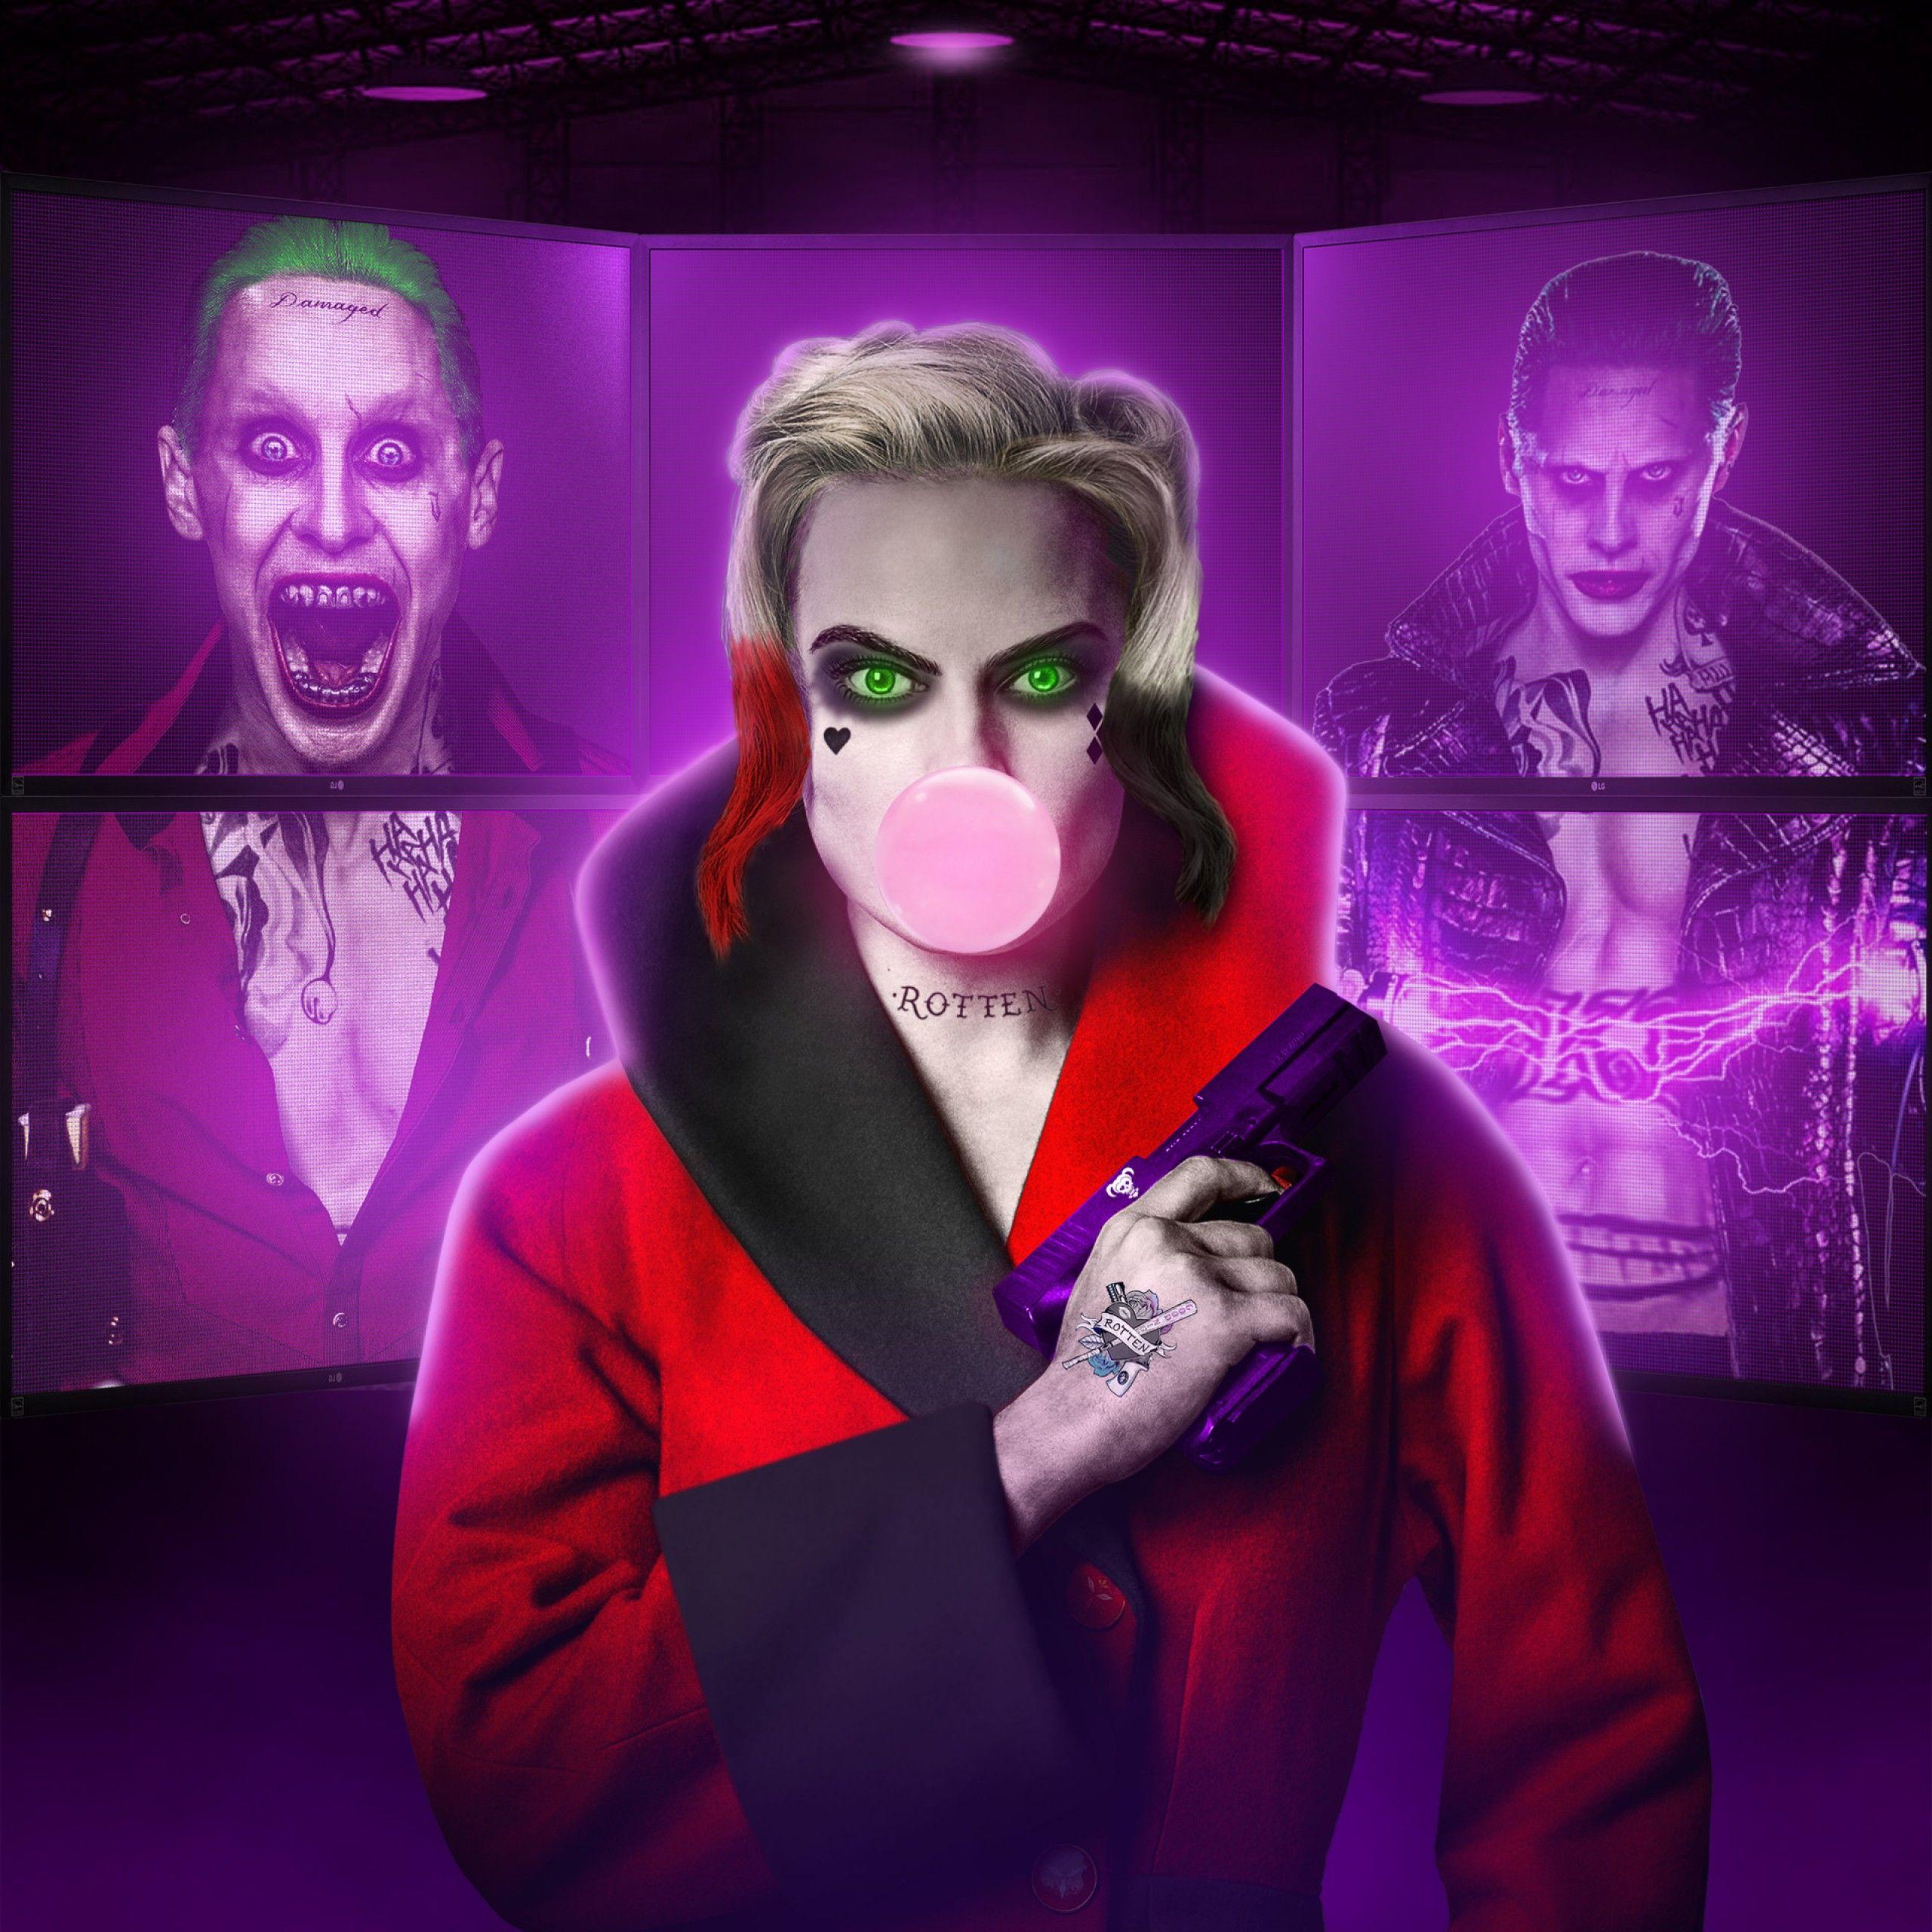 Download 1280x1024 Wallpaper Joker Fan Art, Standard 5:4, Fullscreen,  1280x1024 Hd Image, Background, 7847